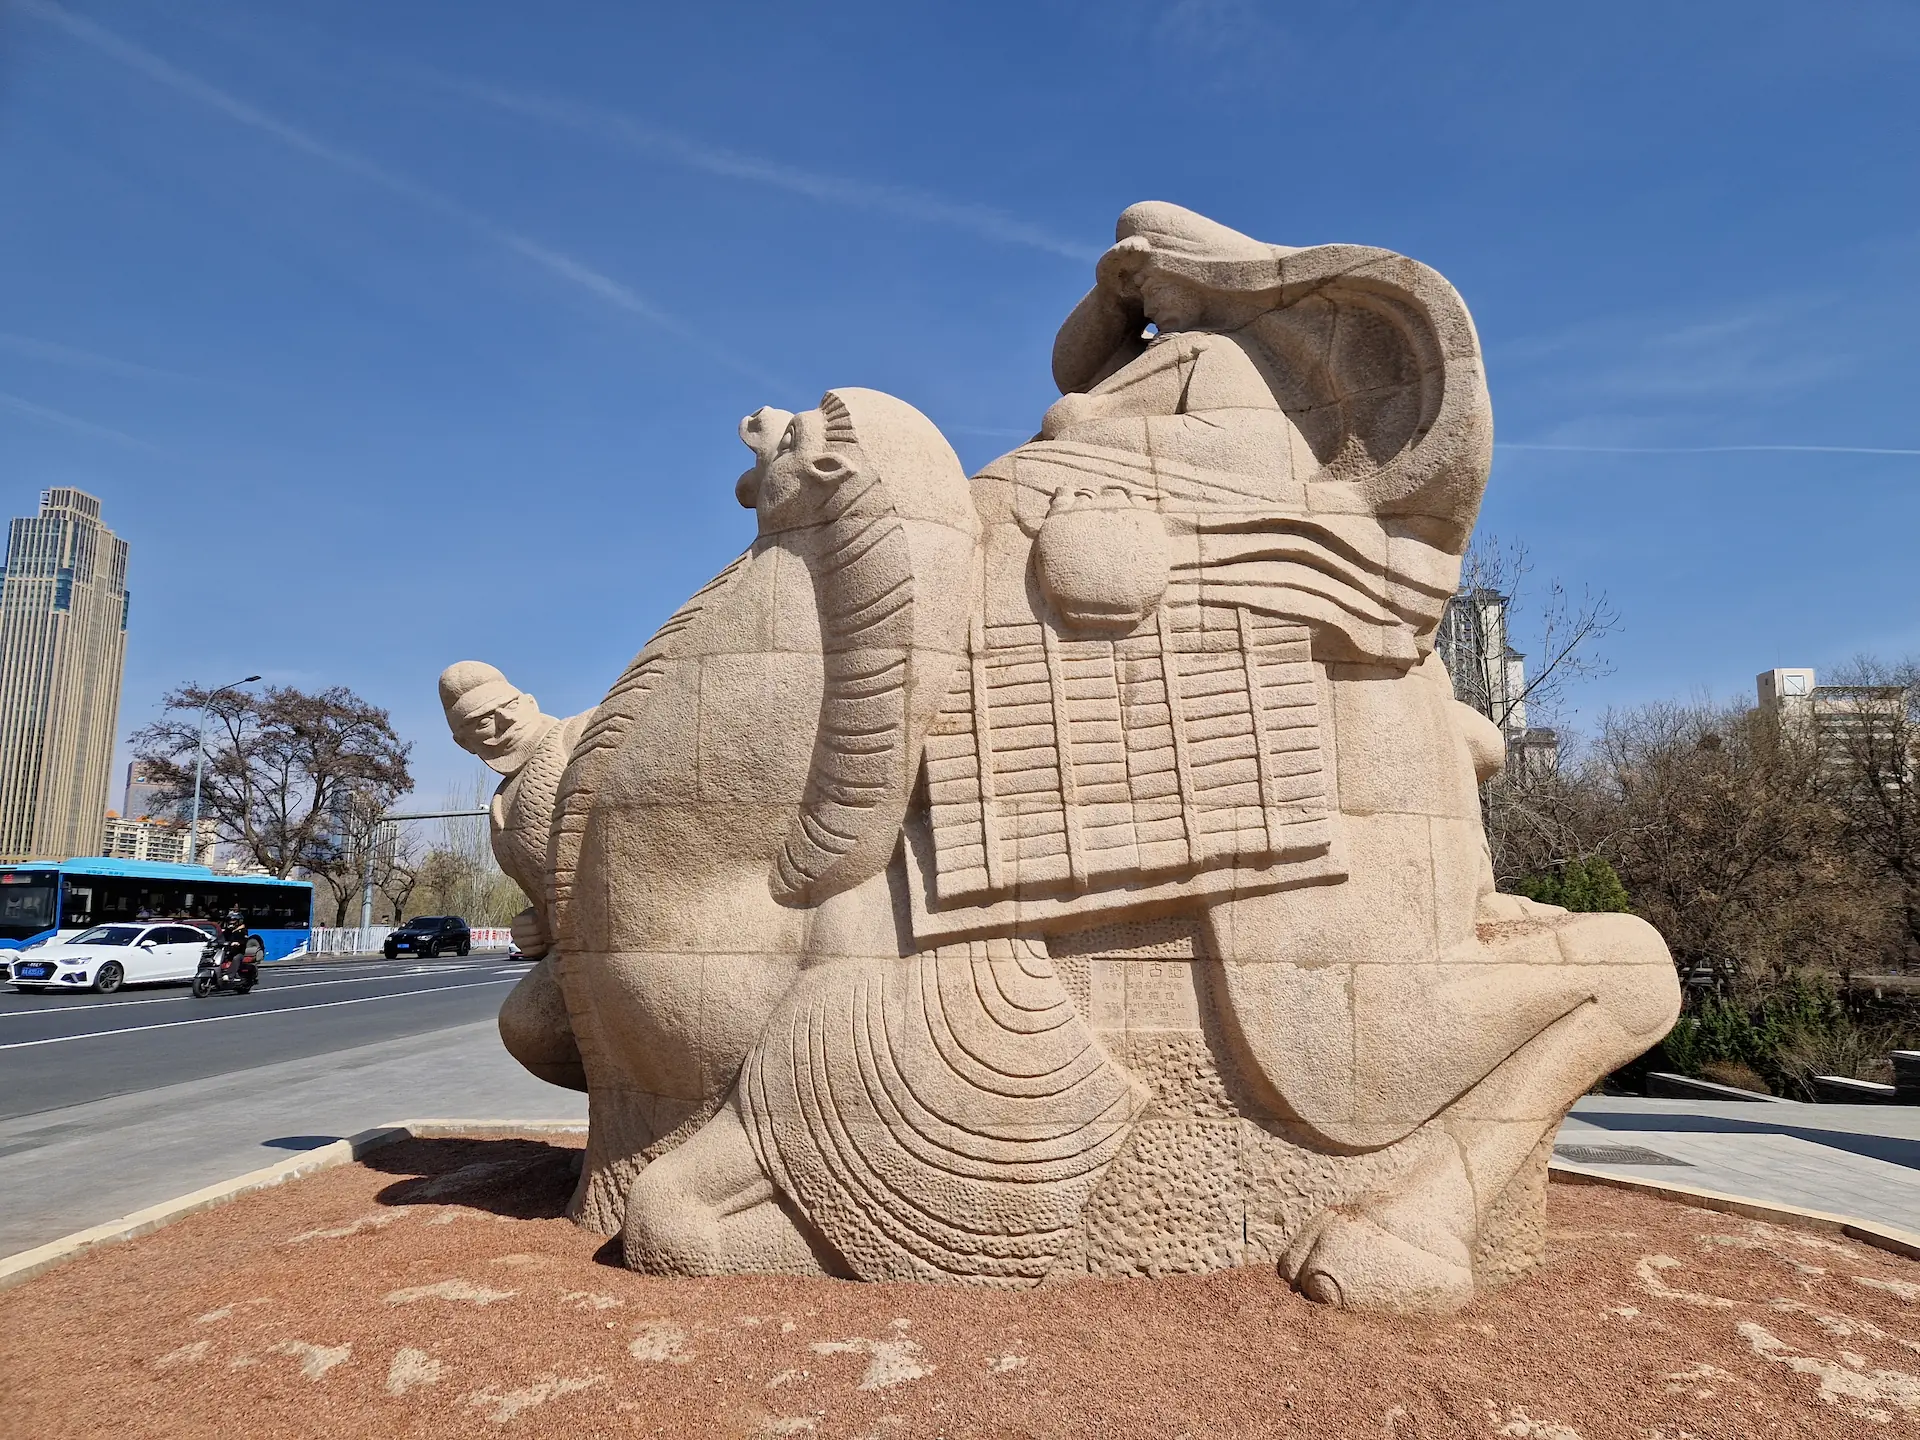 Une statue de dromadaire chargé de machandises, au bord d'une route à Lanzhou